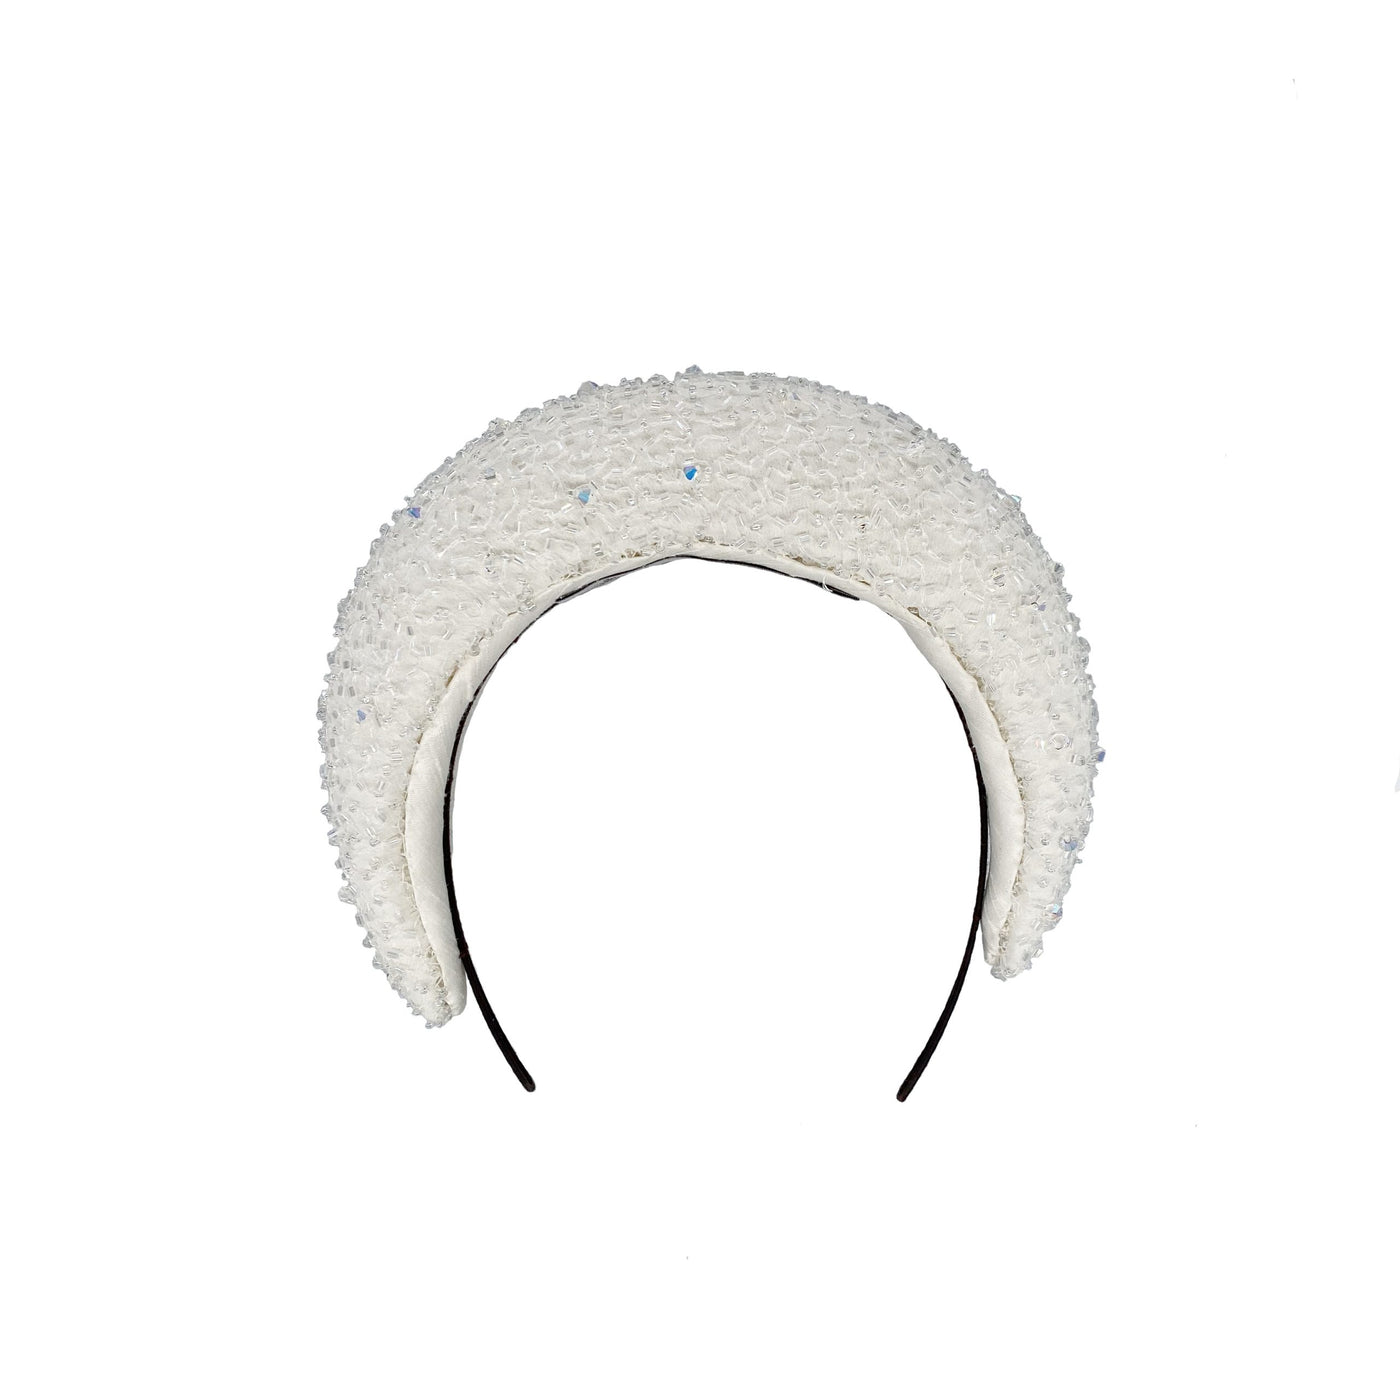 Ivory raised silk beaded headband